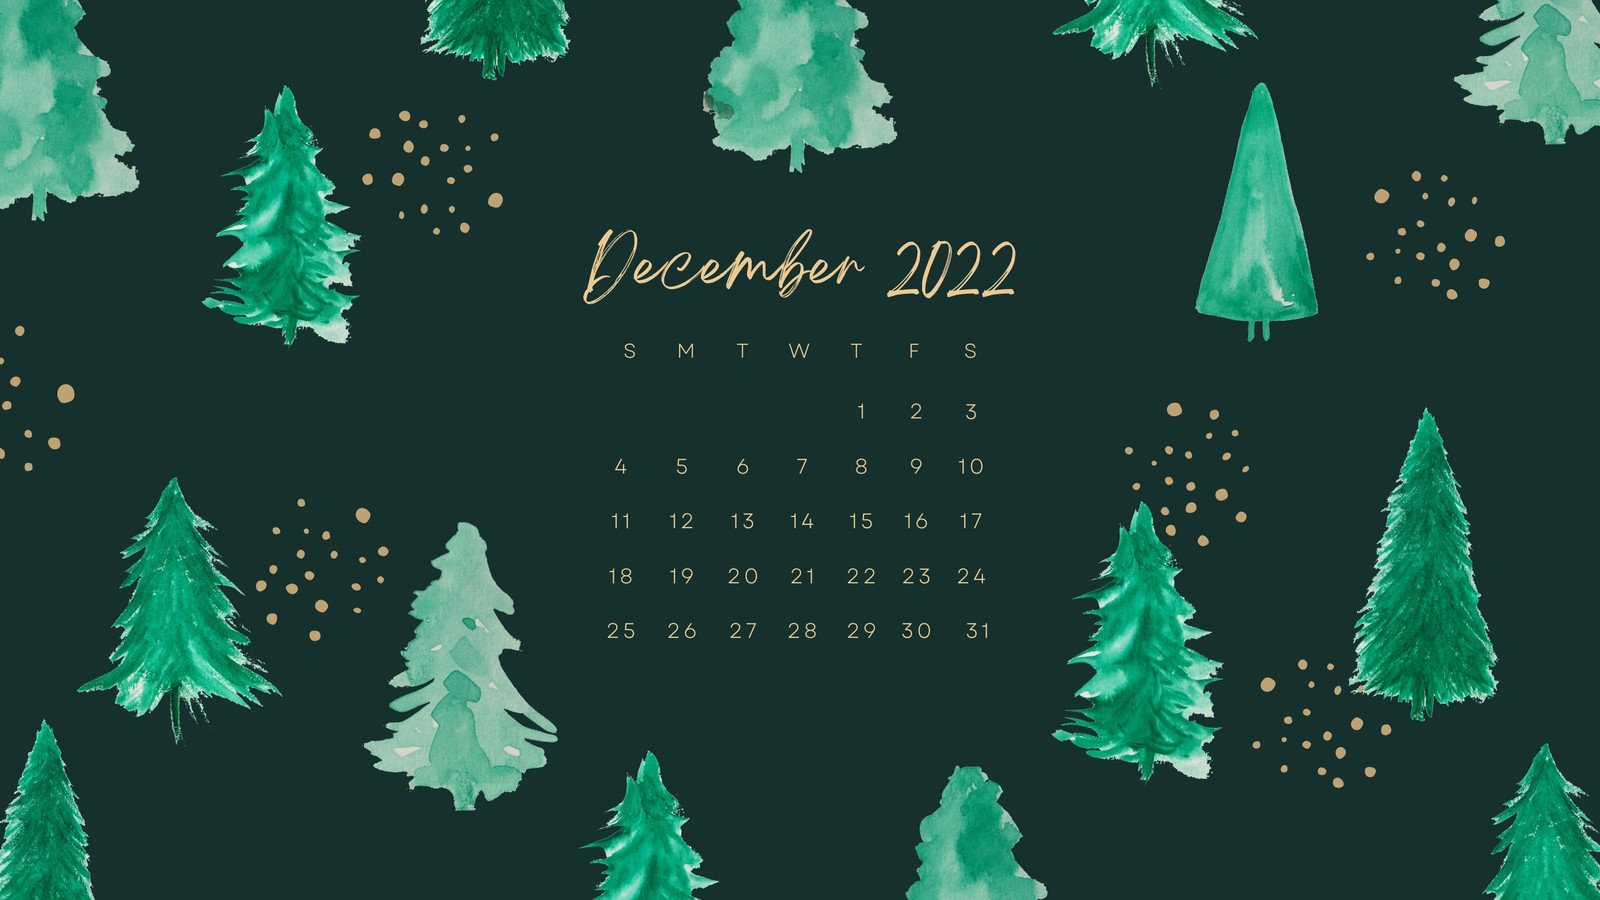 December 2022 wallpapers – 90 FREEBIES for desktop & phones!